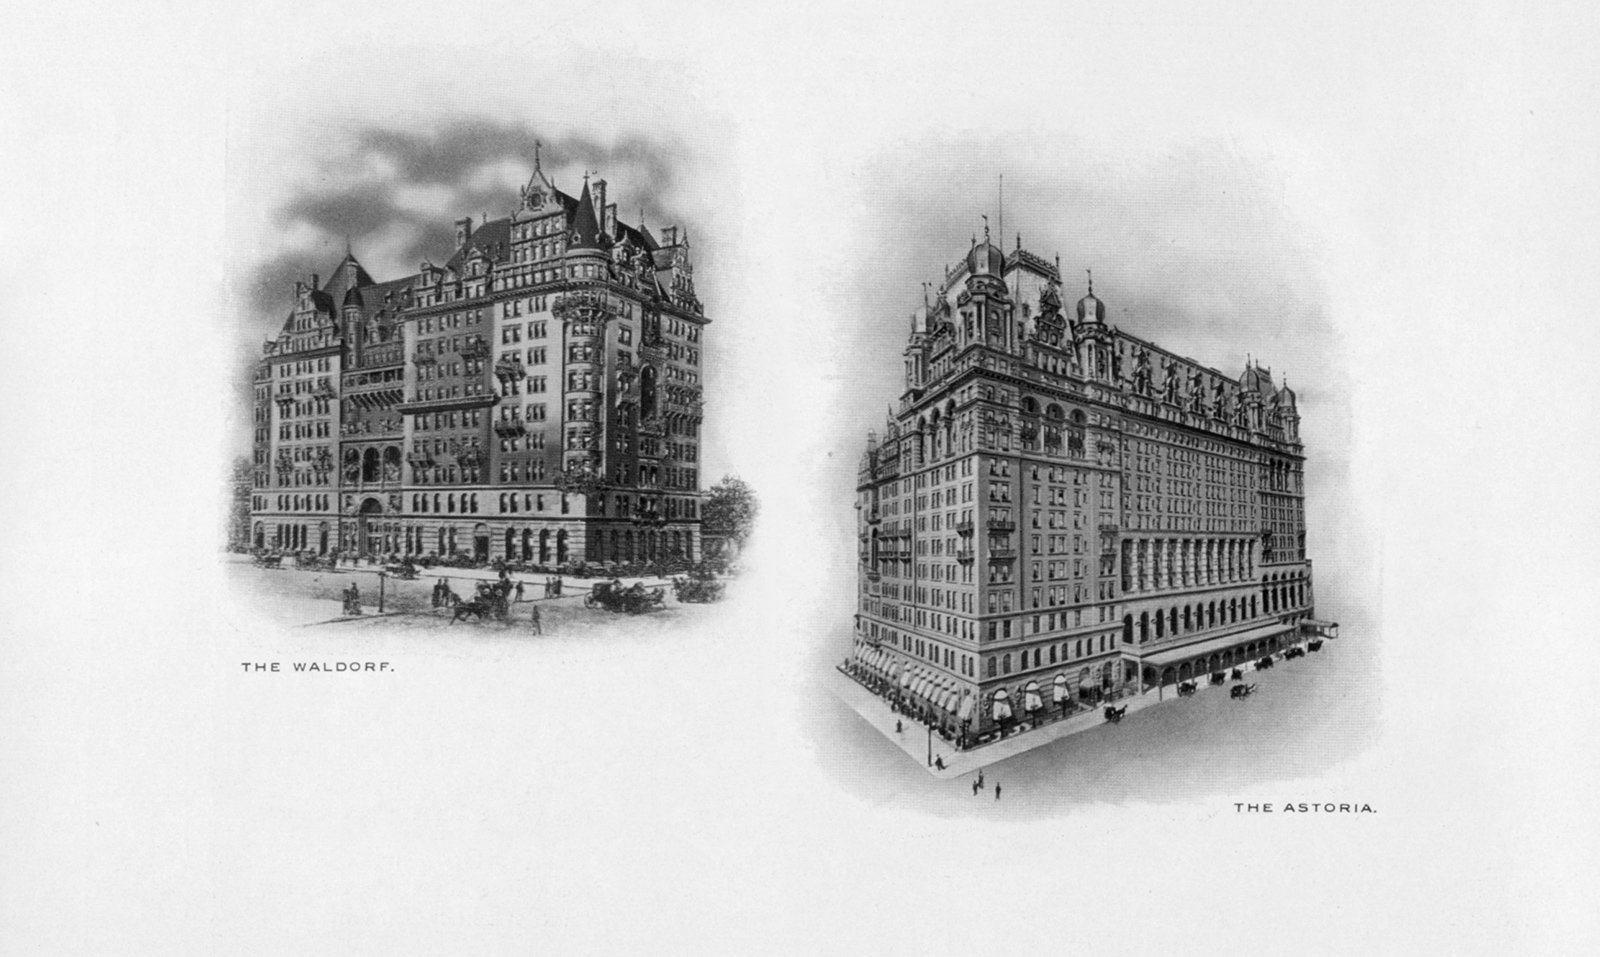 Se inauguró el hotel Waldorf original y, cuatro años más tarde, abrió sus puertas el contiguo hotel Astoria - 1893